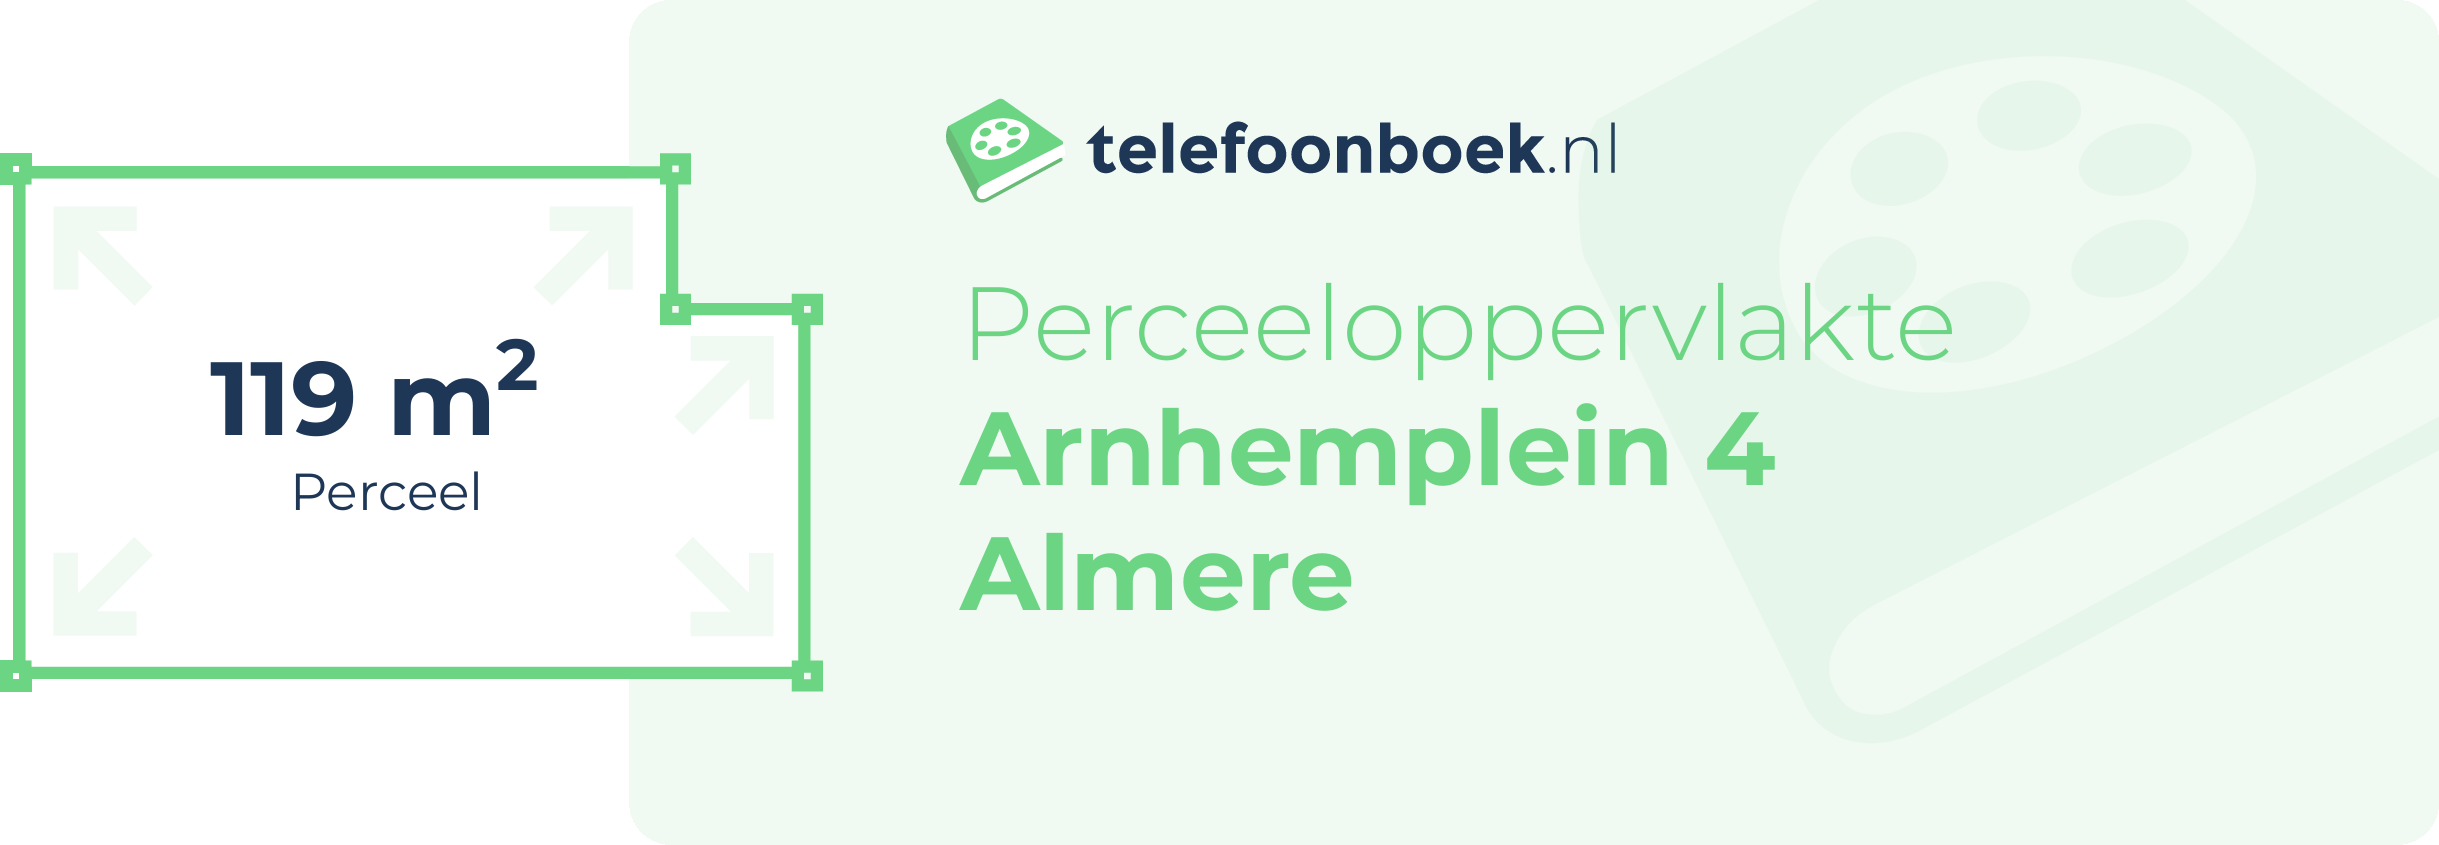 Perceeloppervlakte Arnhemplein 4 Almere